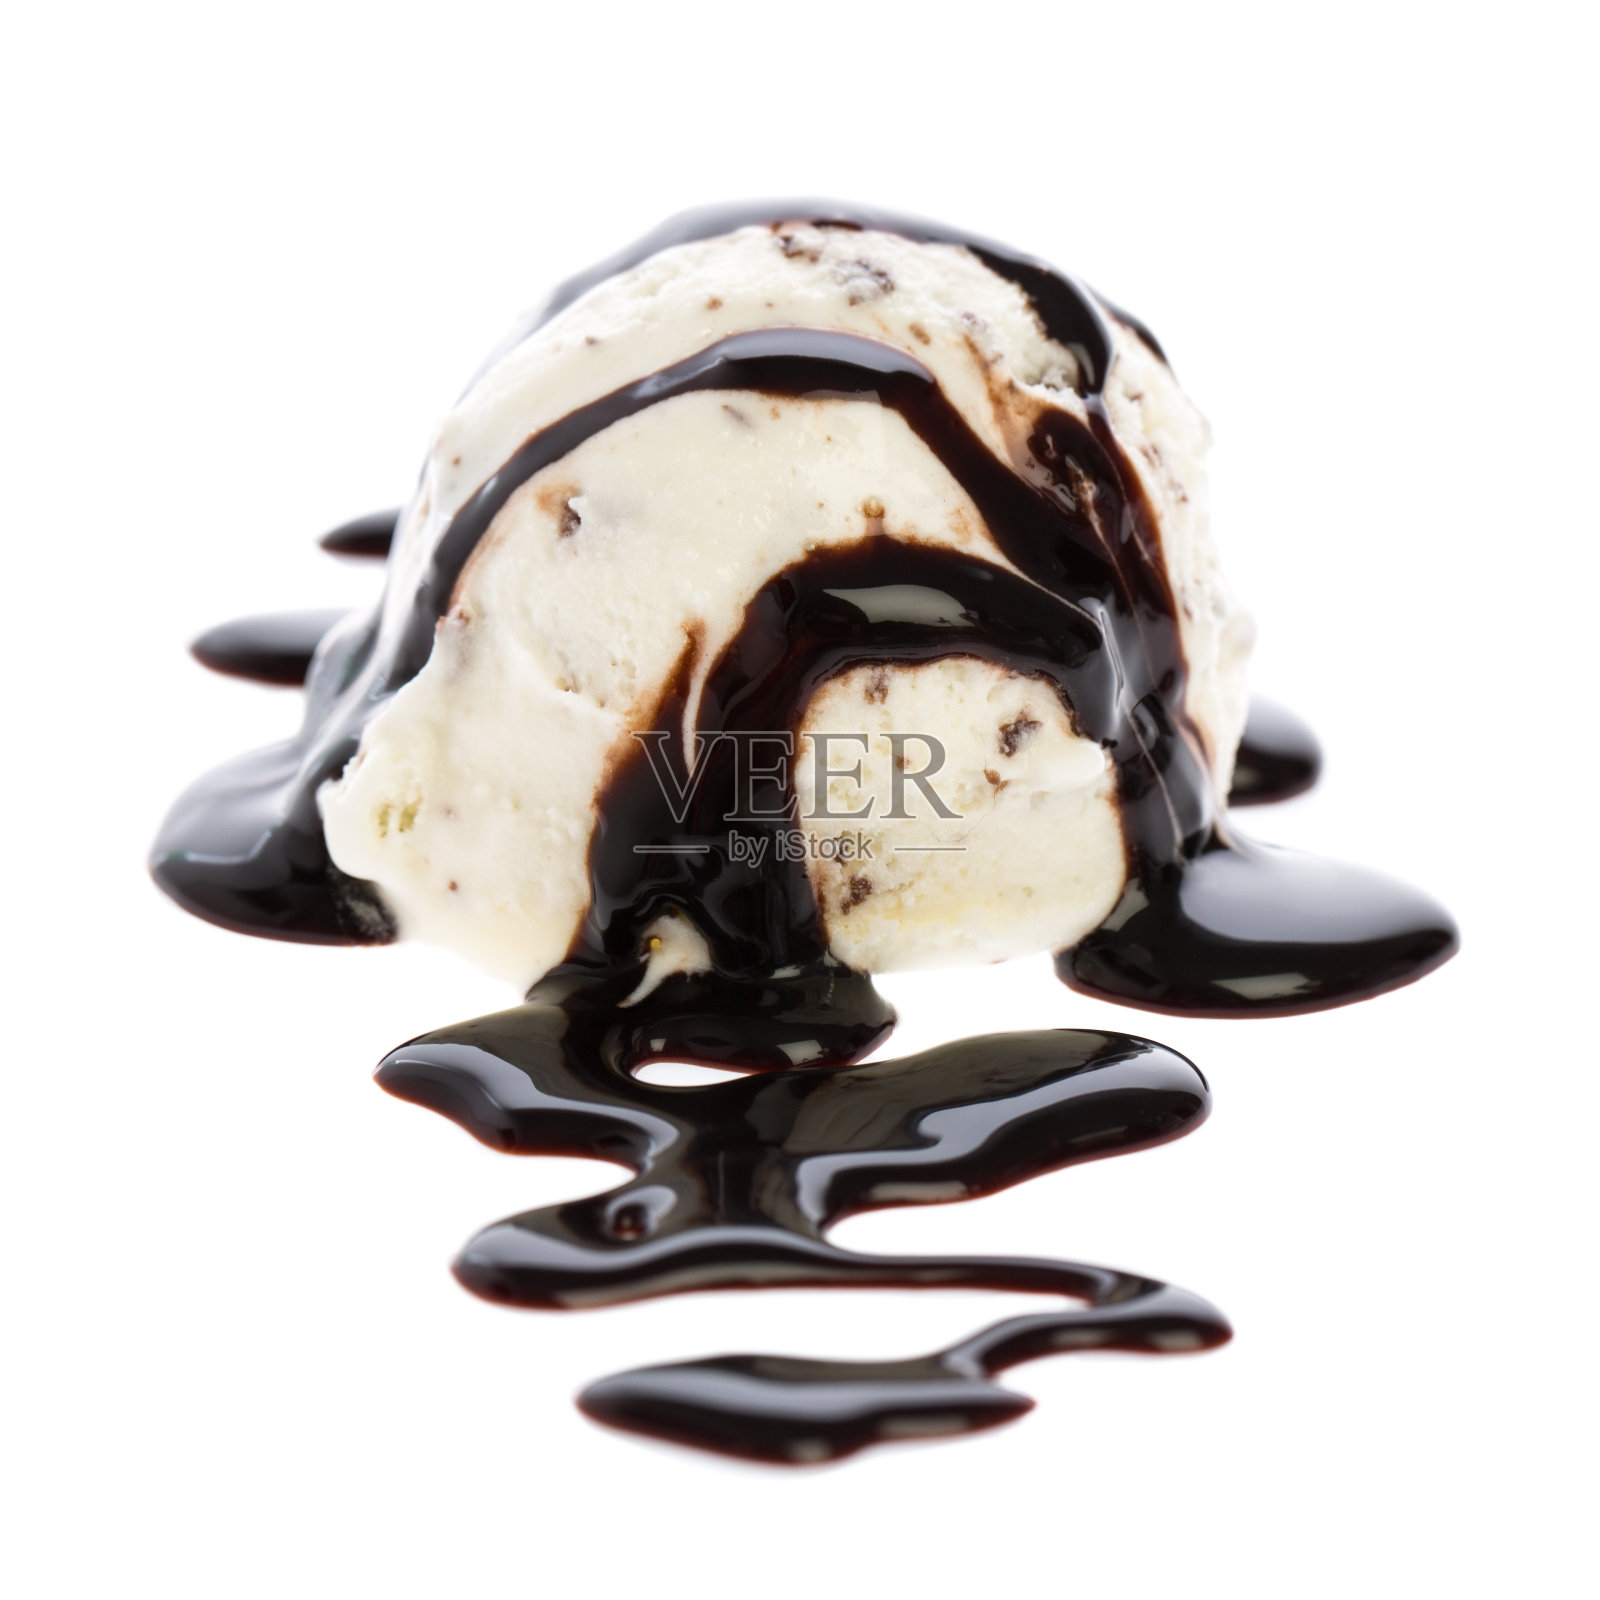 一勺浇上巧克力酱的意式干酪冰淇淋照片摄影图片